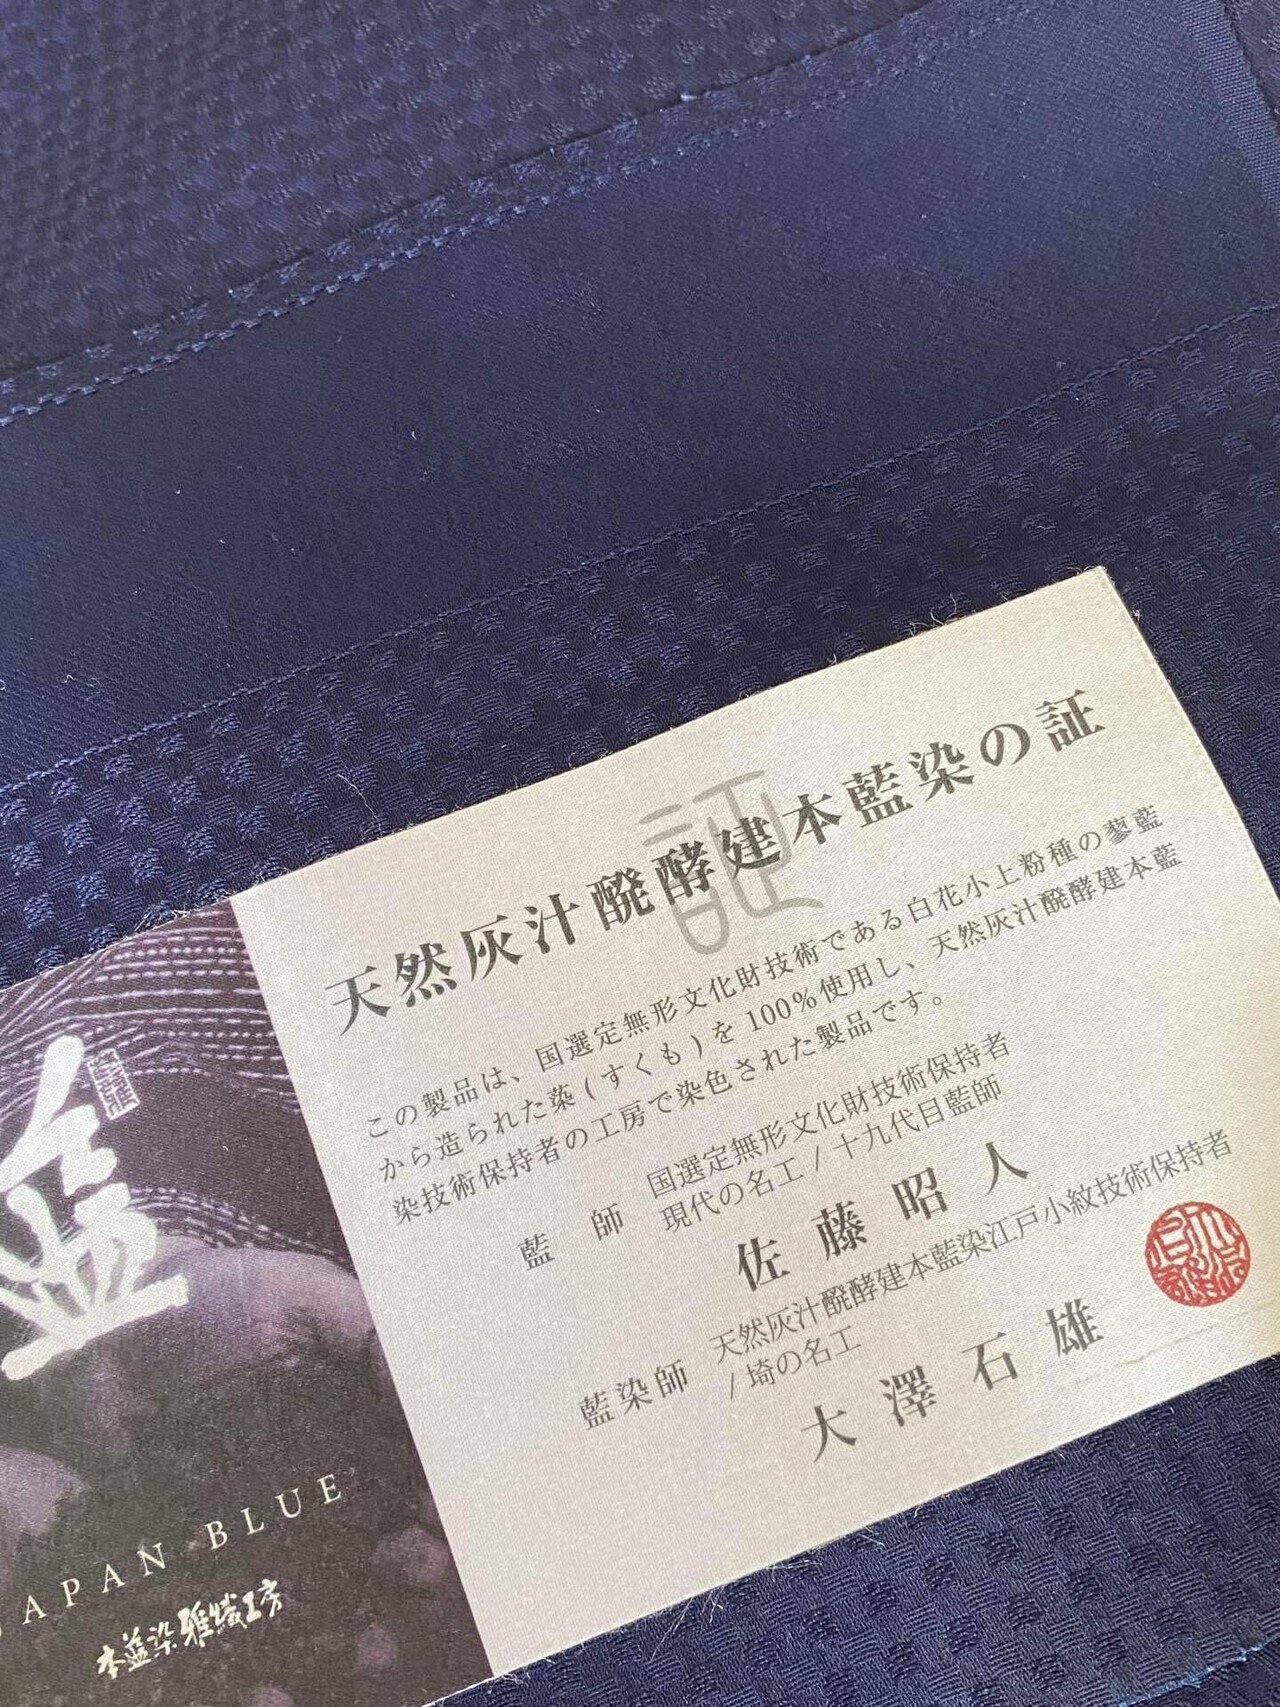 1559.無形文化財保持者 佐藤昭人 天然阿波藍灰汁発酵建本藍 小紋 藍染